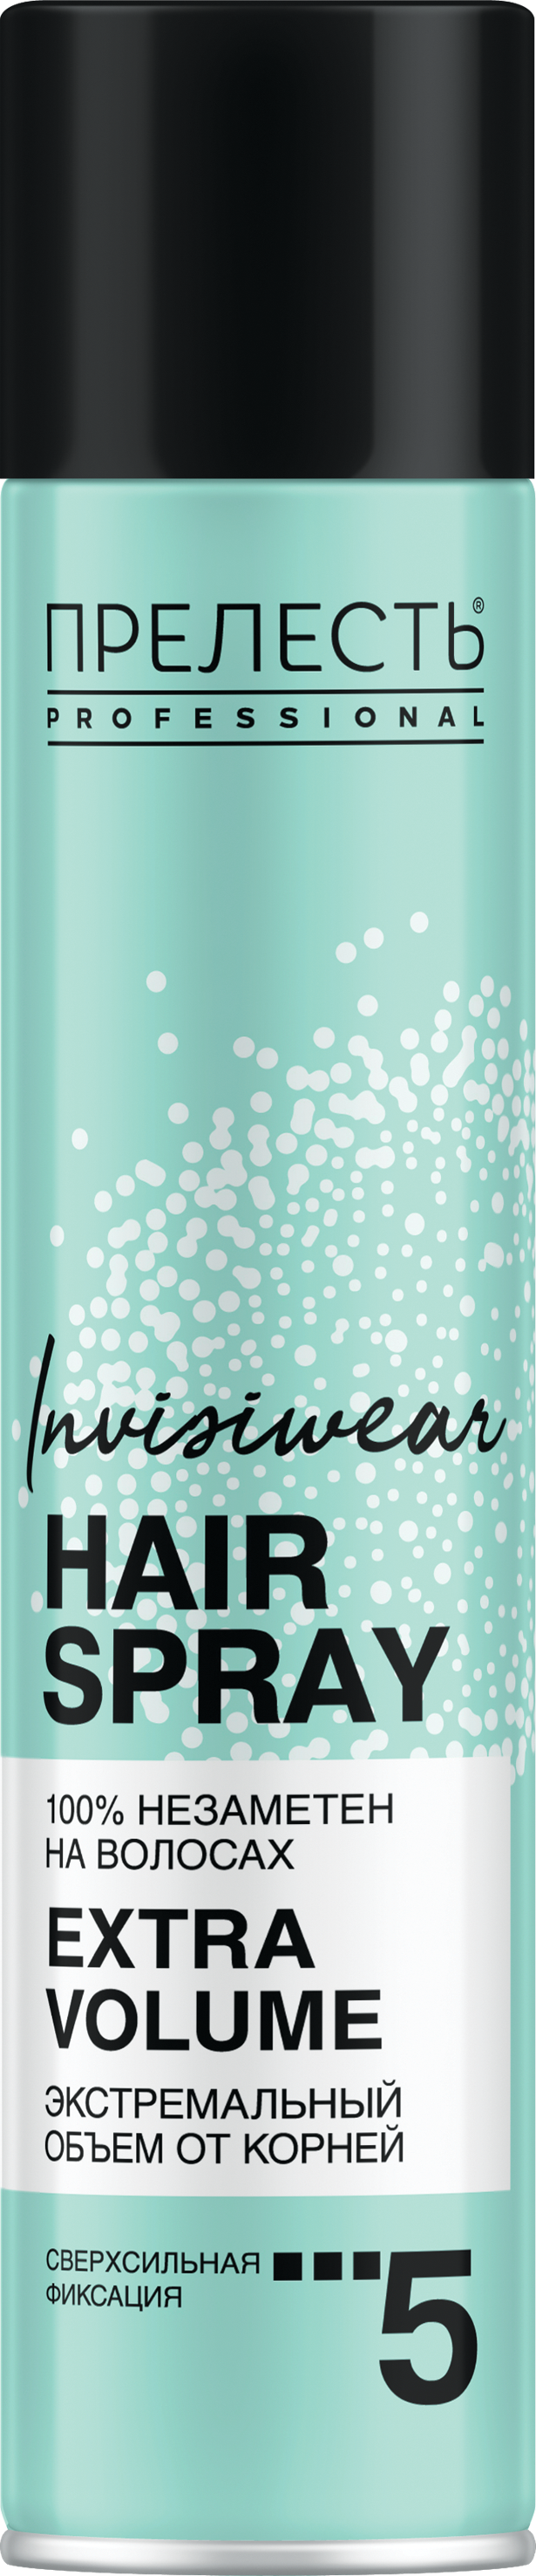 Лак для волос Прелесть Invisiwear Невесомый, экстремальный объем, 300 мл